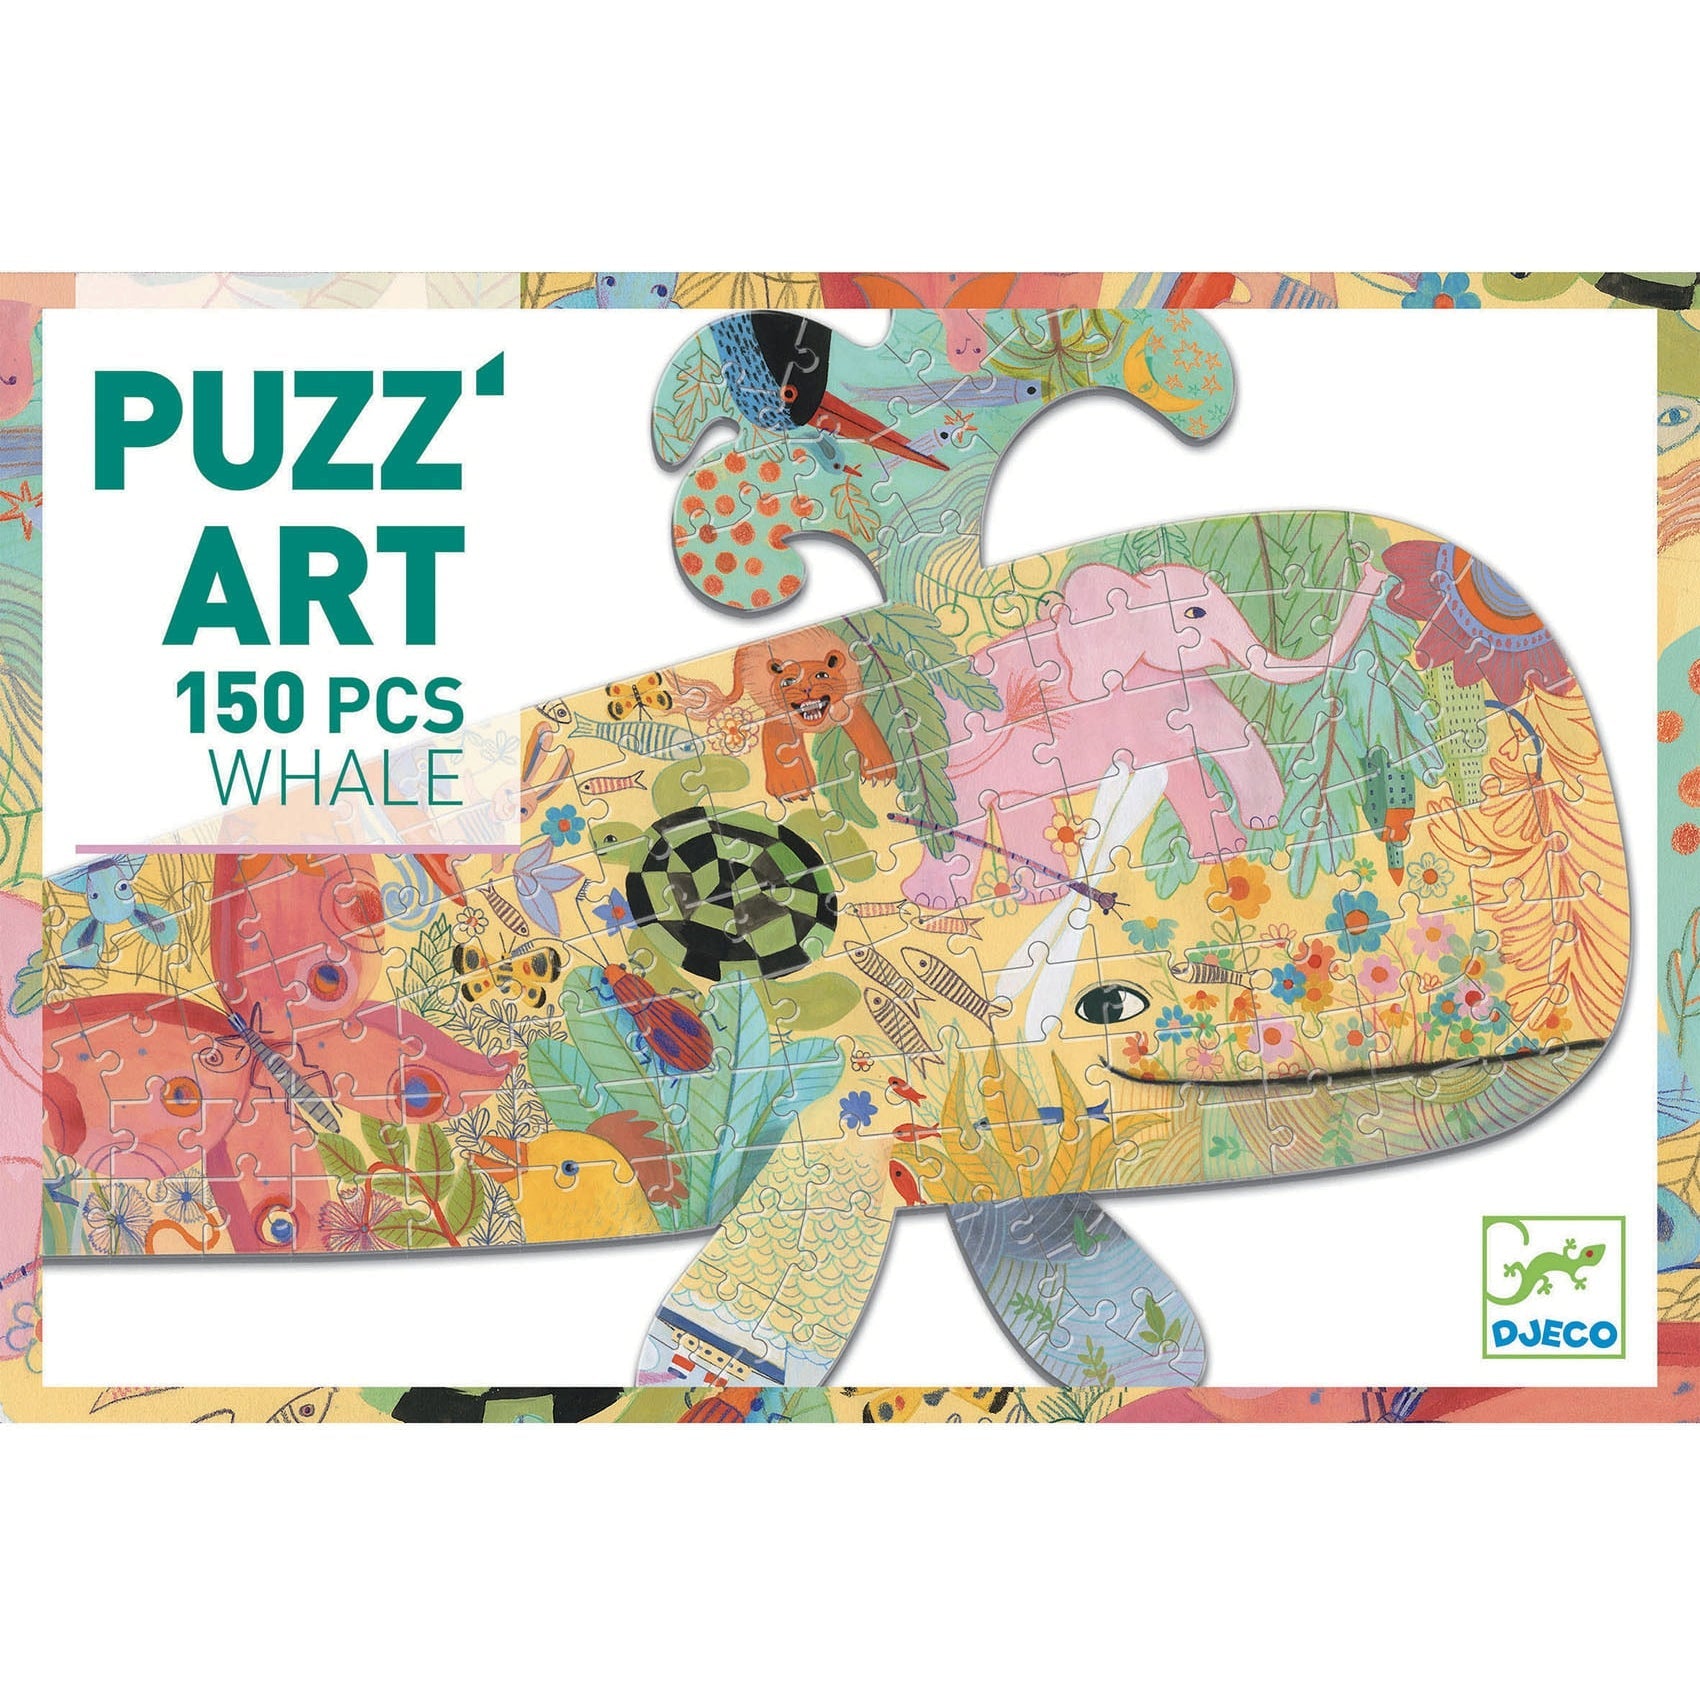 DJECO Puzzle Art - Whale (150 Pieces)